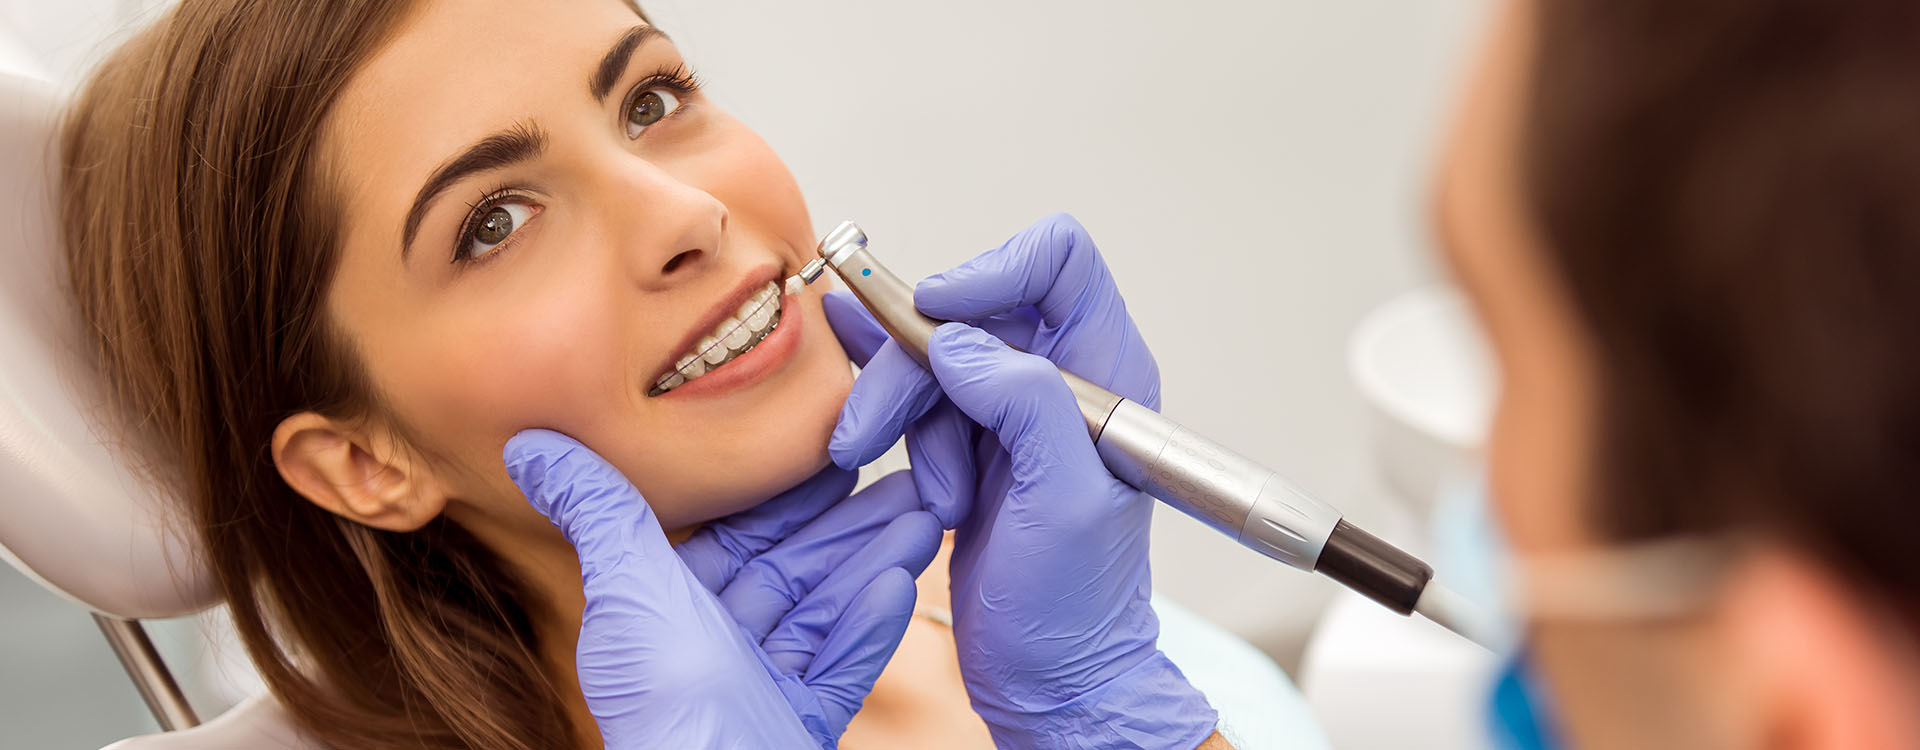 Clínica Dental Andrea Compte, tu Centro Odontológico especializado. Ortodoncia en Benicarló. Paciente haciéndose una revisión de los aparatos en la clínica dental.